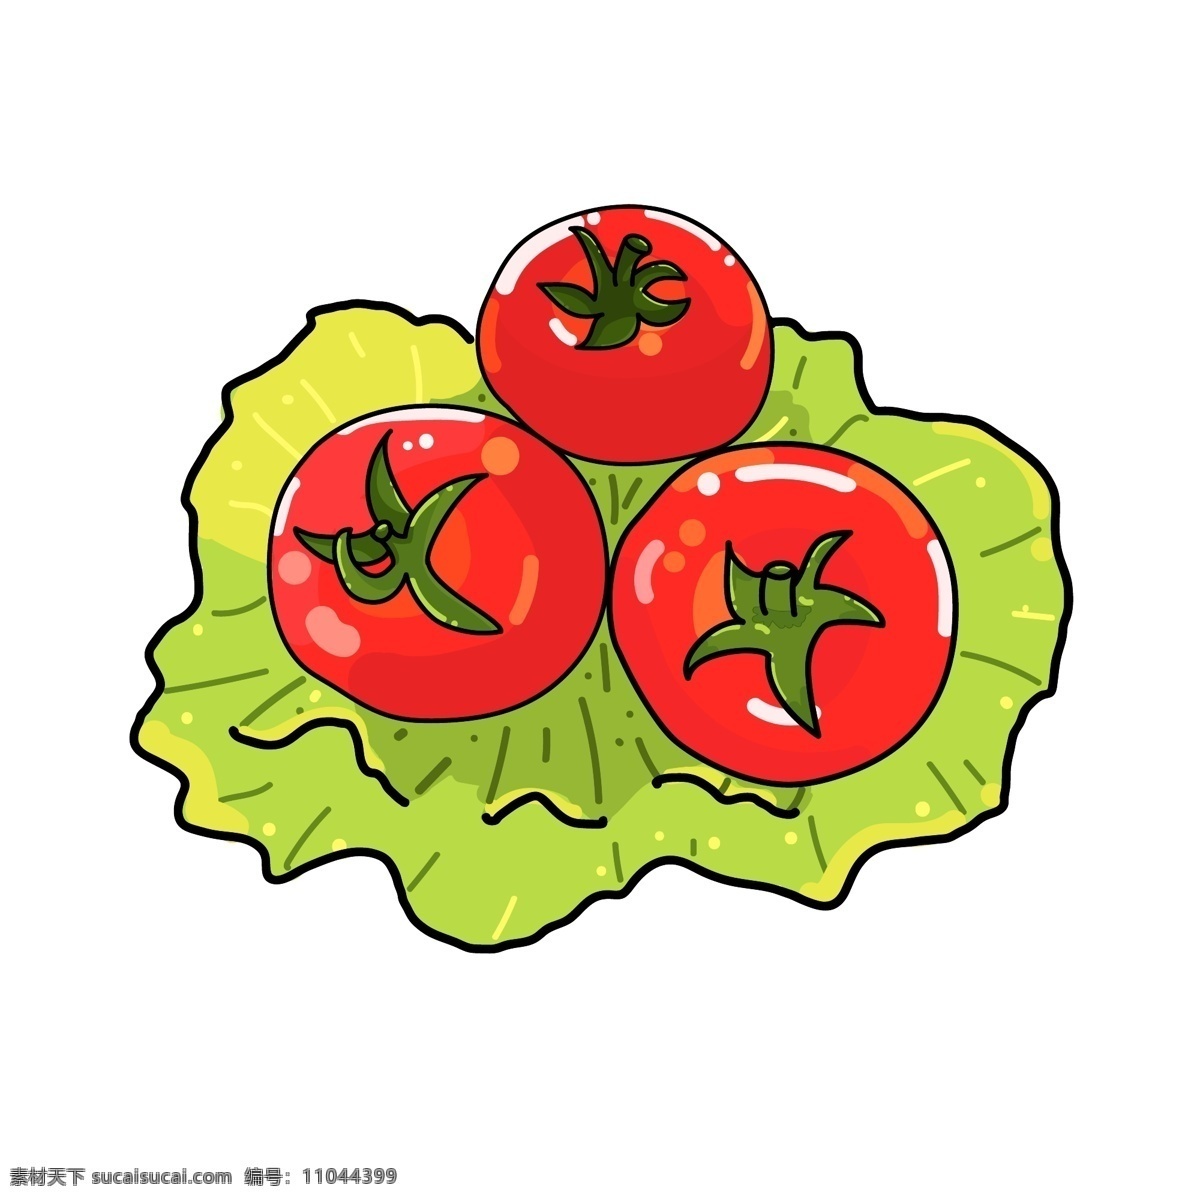 蔬菜 红色 卡通 仿真 西红柿 矢量 矢量图 手绘 食材 番茄 可爱 果蔬 配菜 美食 青菜 png格式